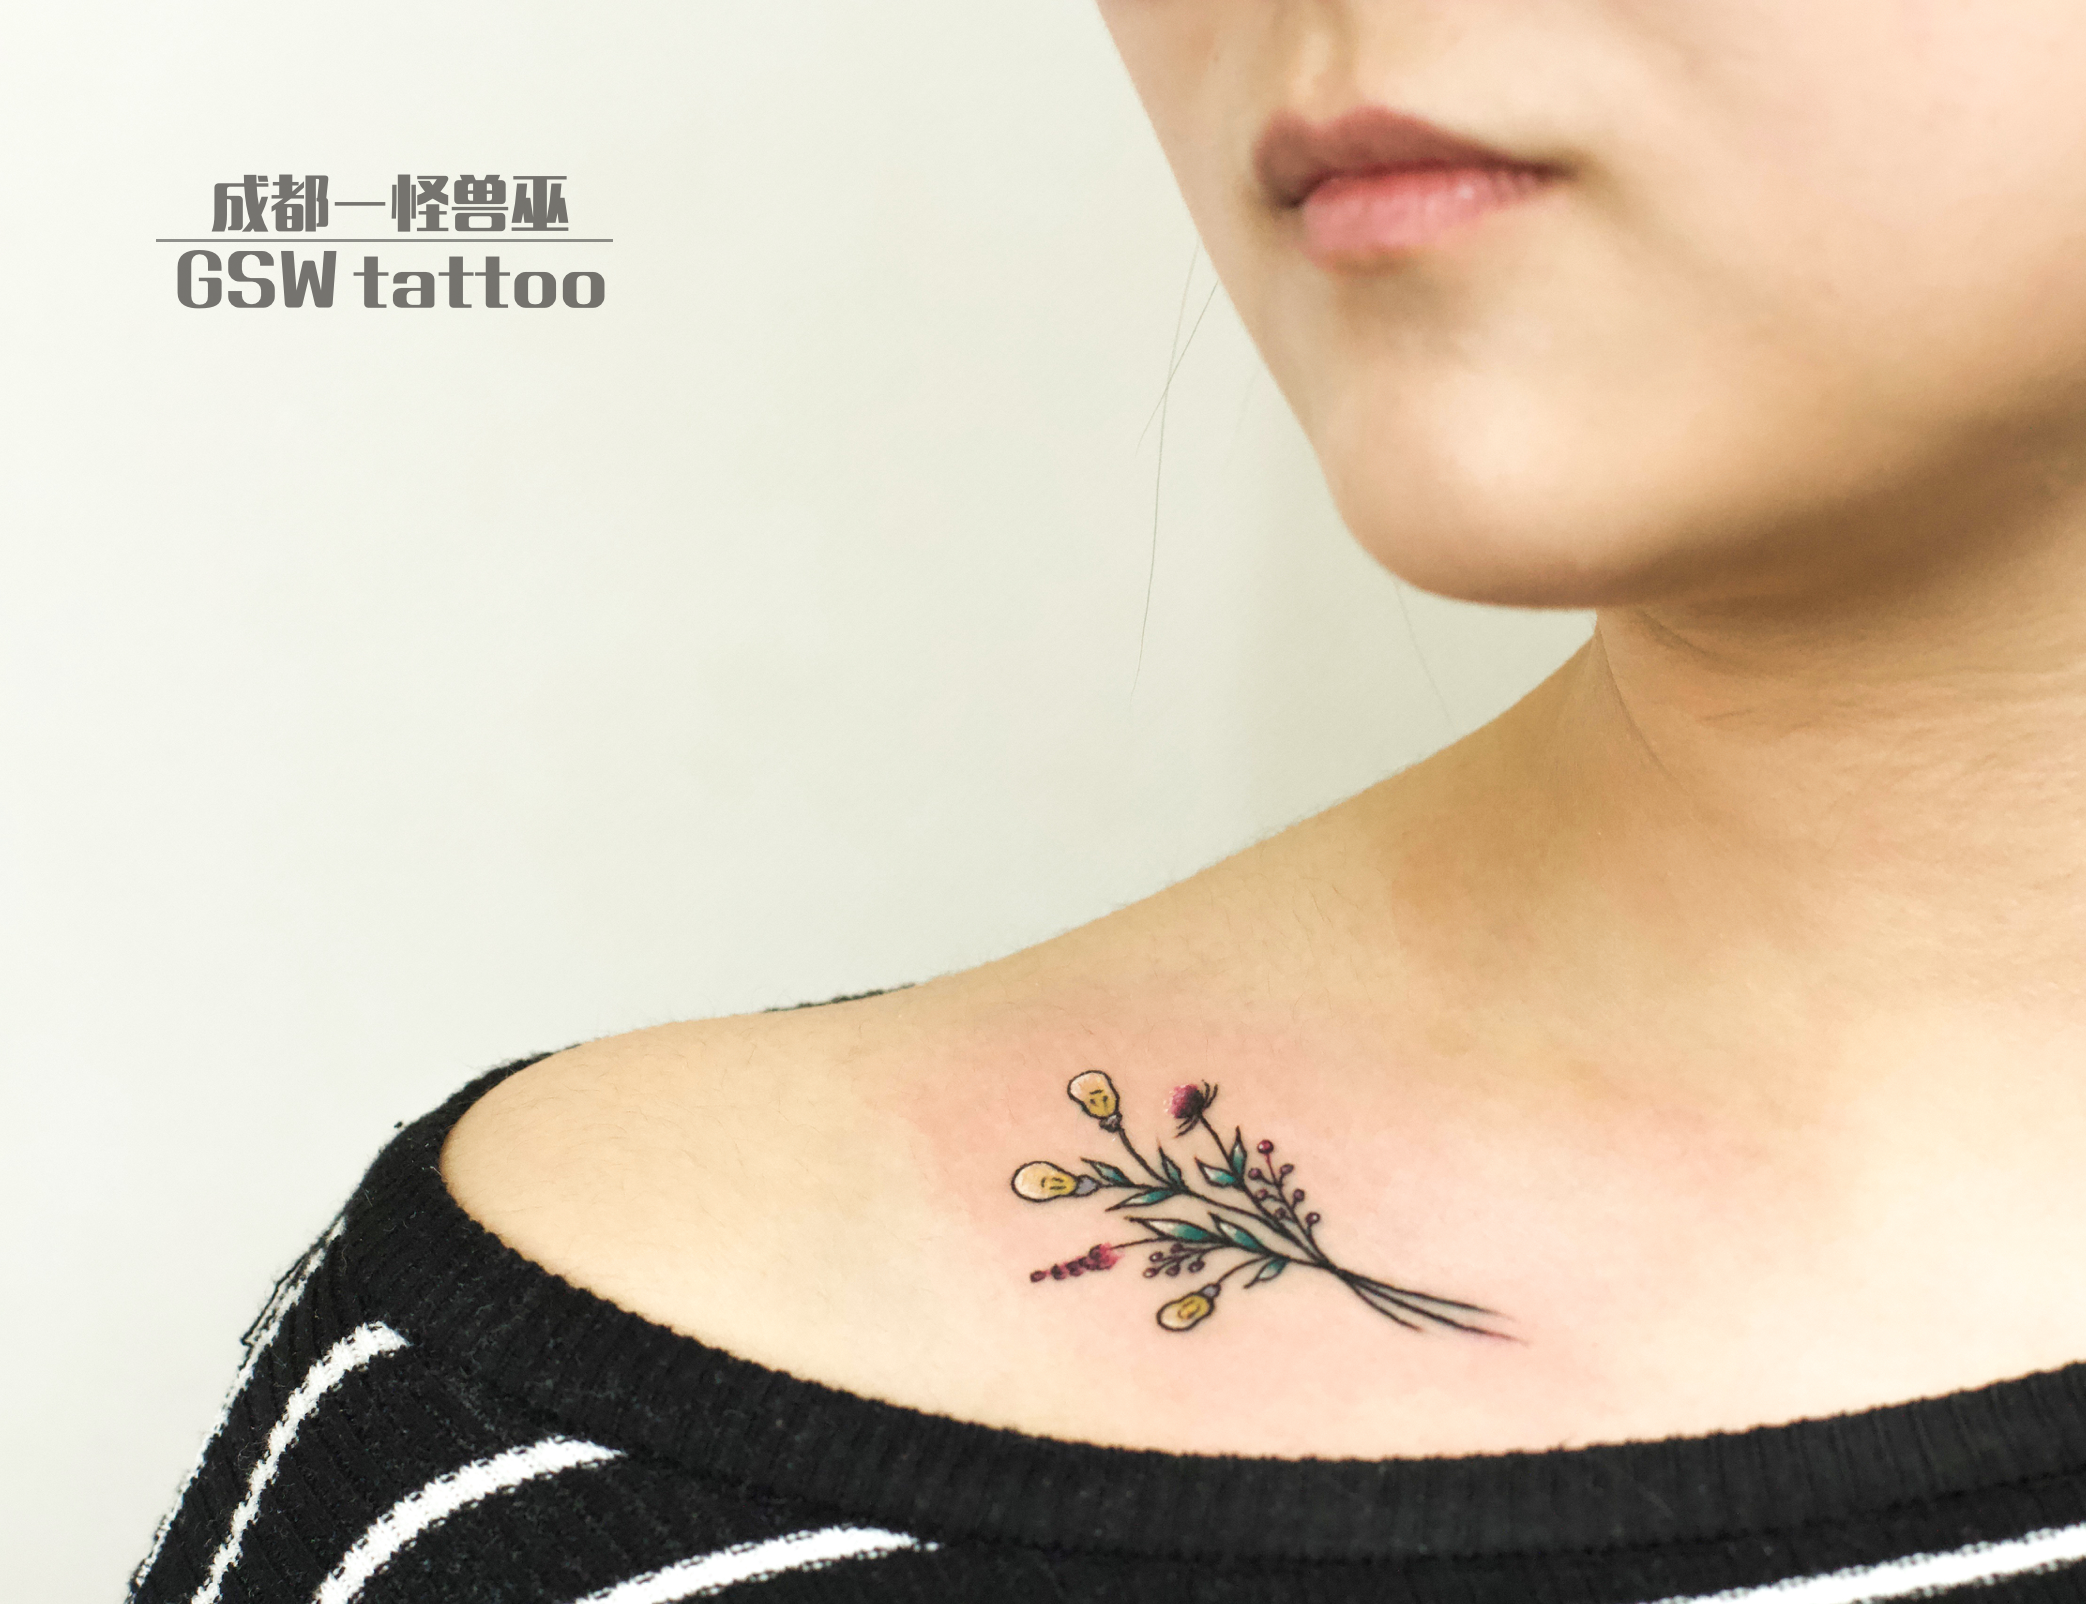 美女小丽左肩膀彩色莲花纹身图案 - 北京纹彩刺青